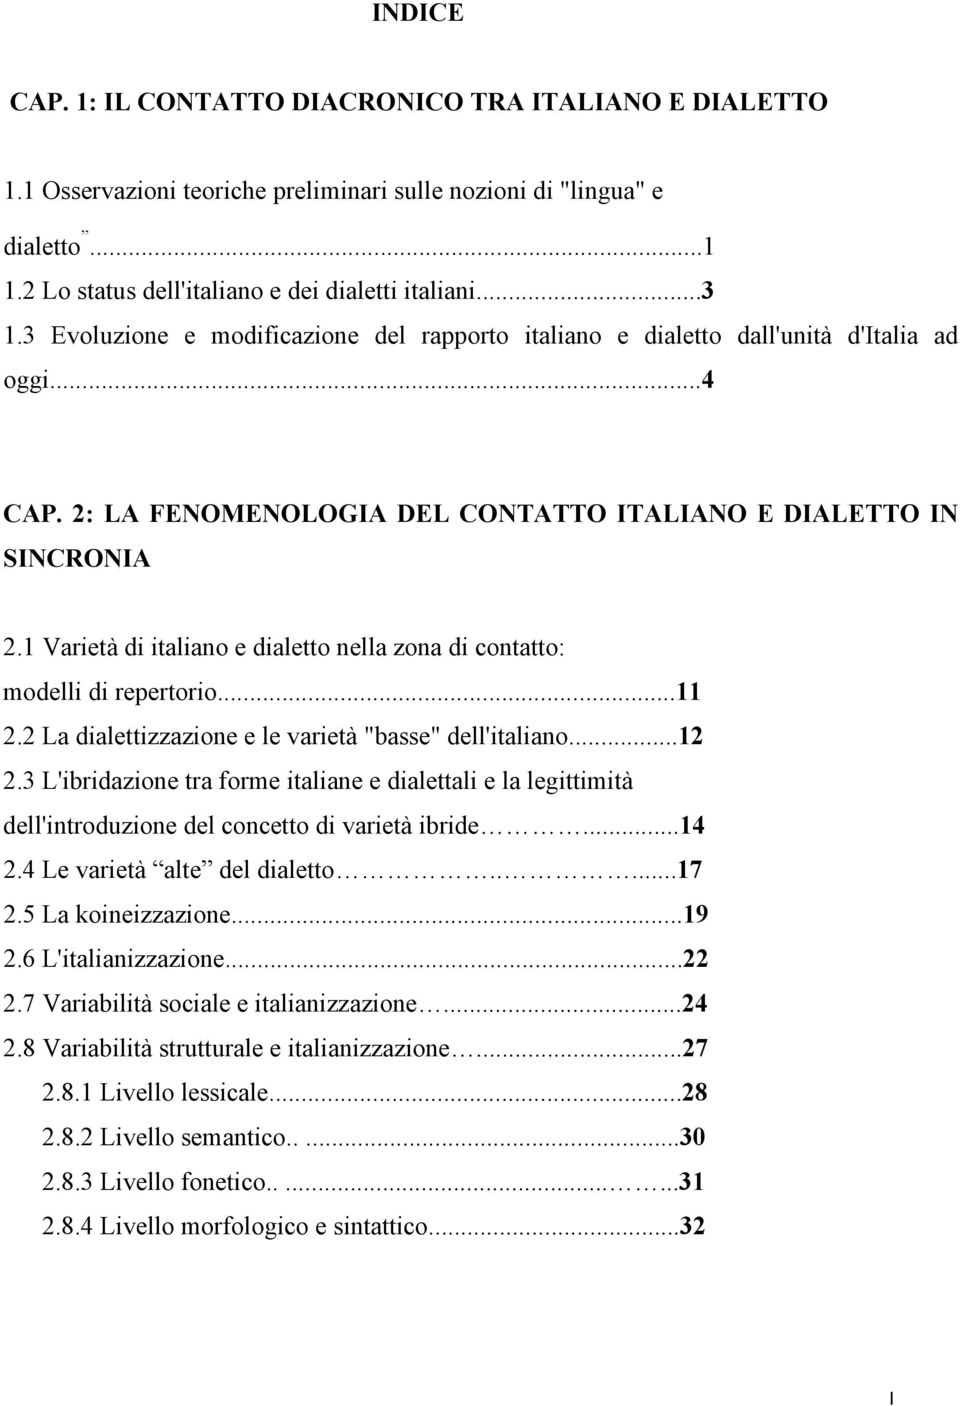 1 Varietà di italiao e dialetto ella zoa di cotatto: modelli di repertorio...11 2.2 La dialettizzazioe e le varietà "basse" dell'italiao...12 2.